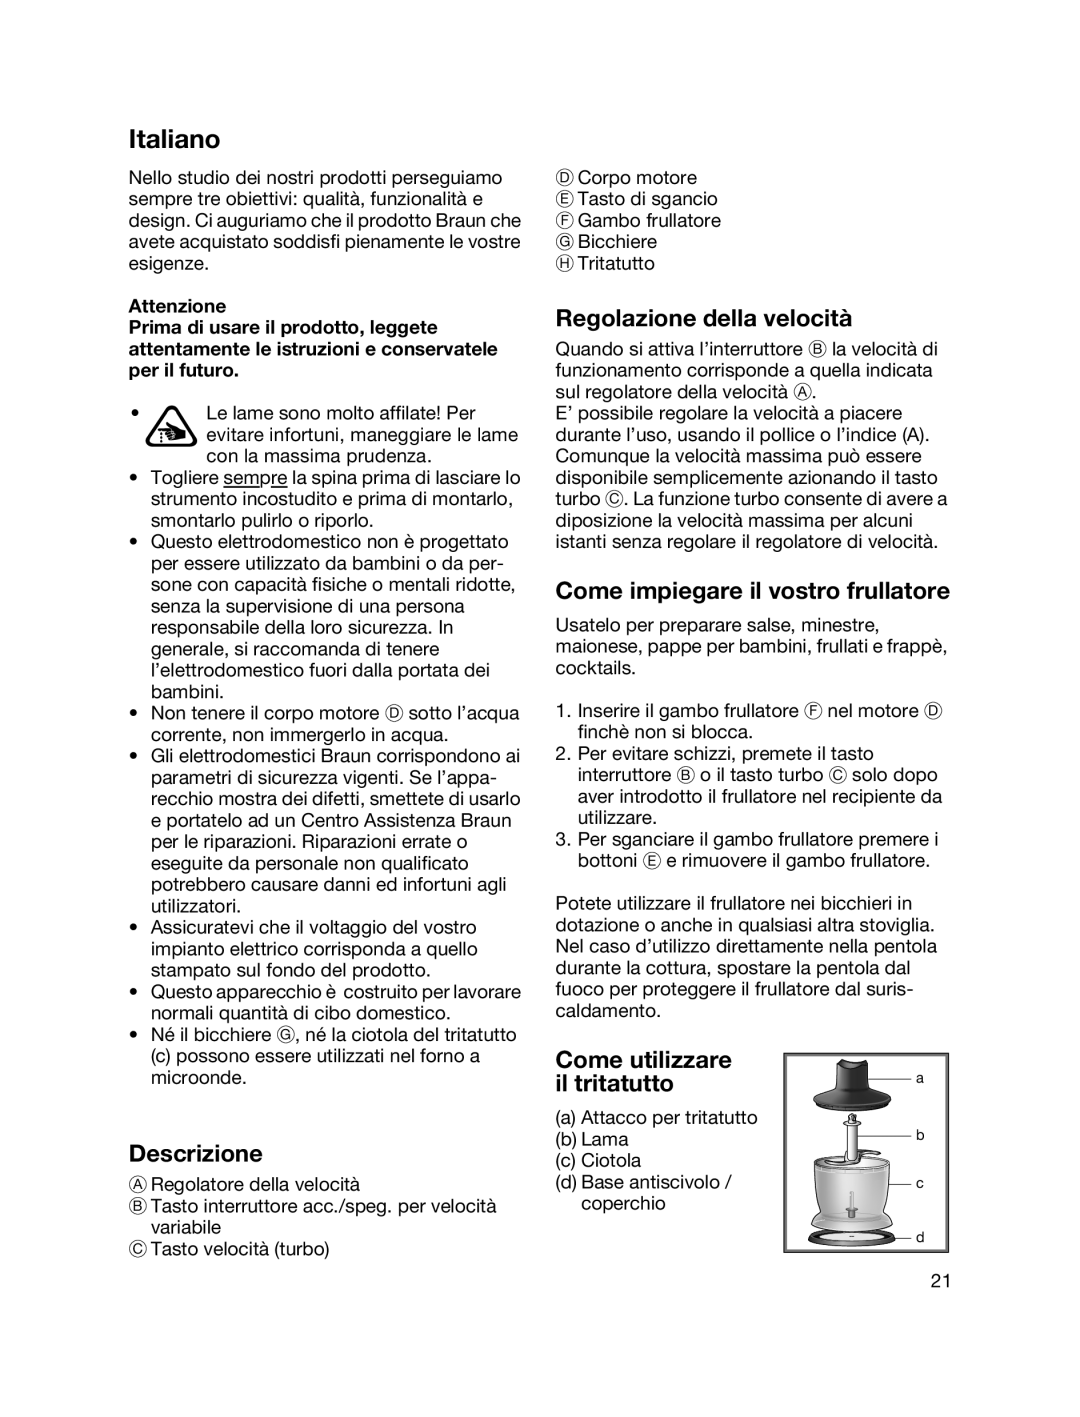 Braun MR700 manual Italiano, Regolazione della velocità, Come impiegare il vostro frullatore, Descrizione 